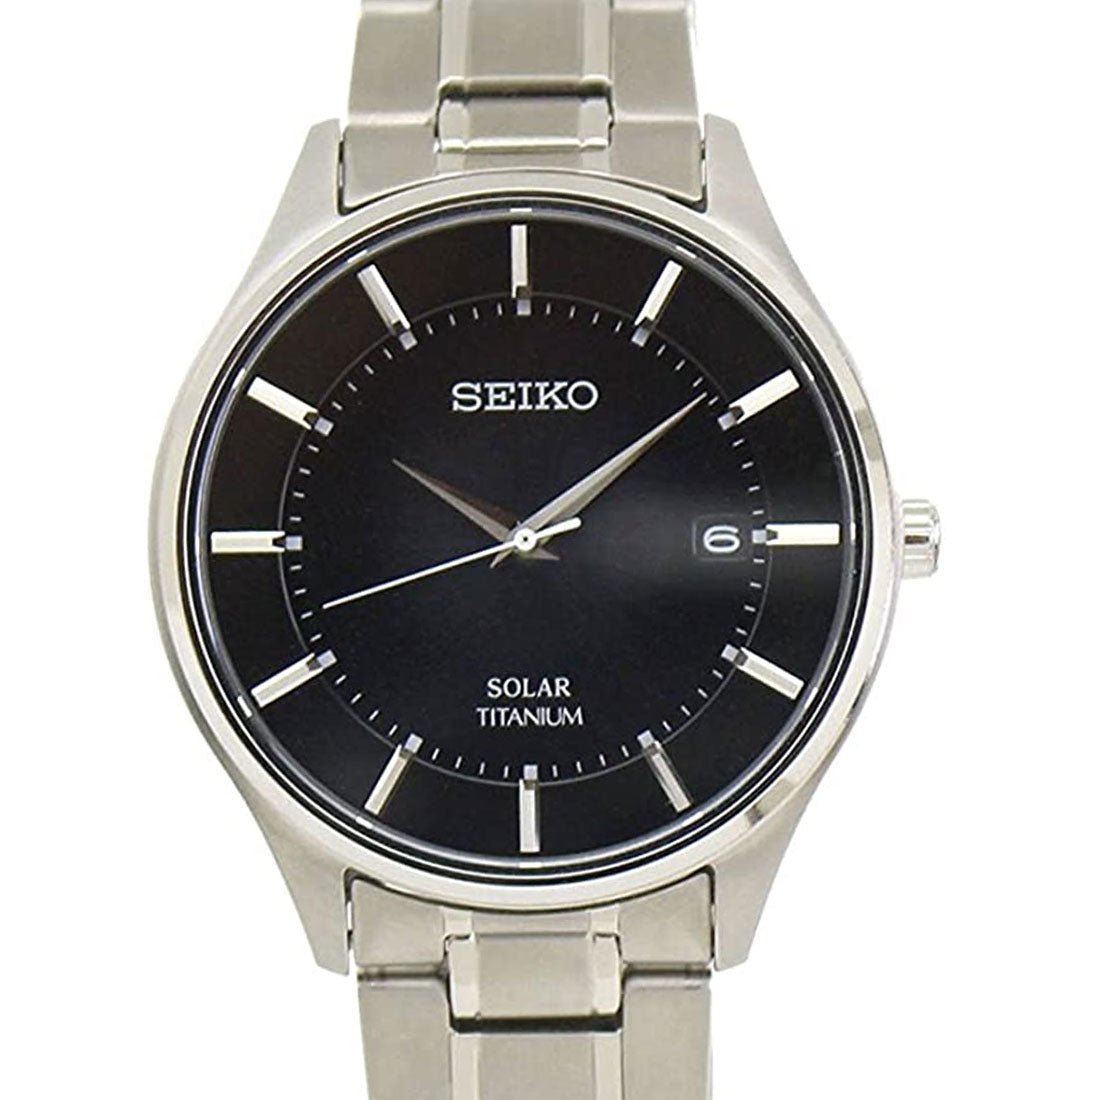 Seiko Selection Titanium JDM Watch SBPX103 -Seiko